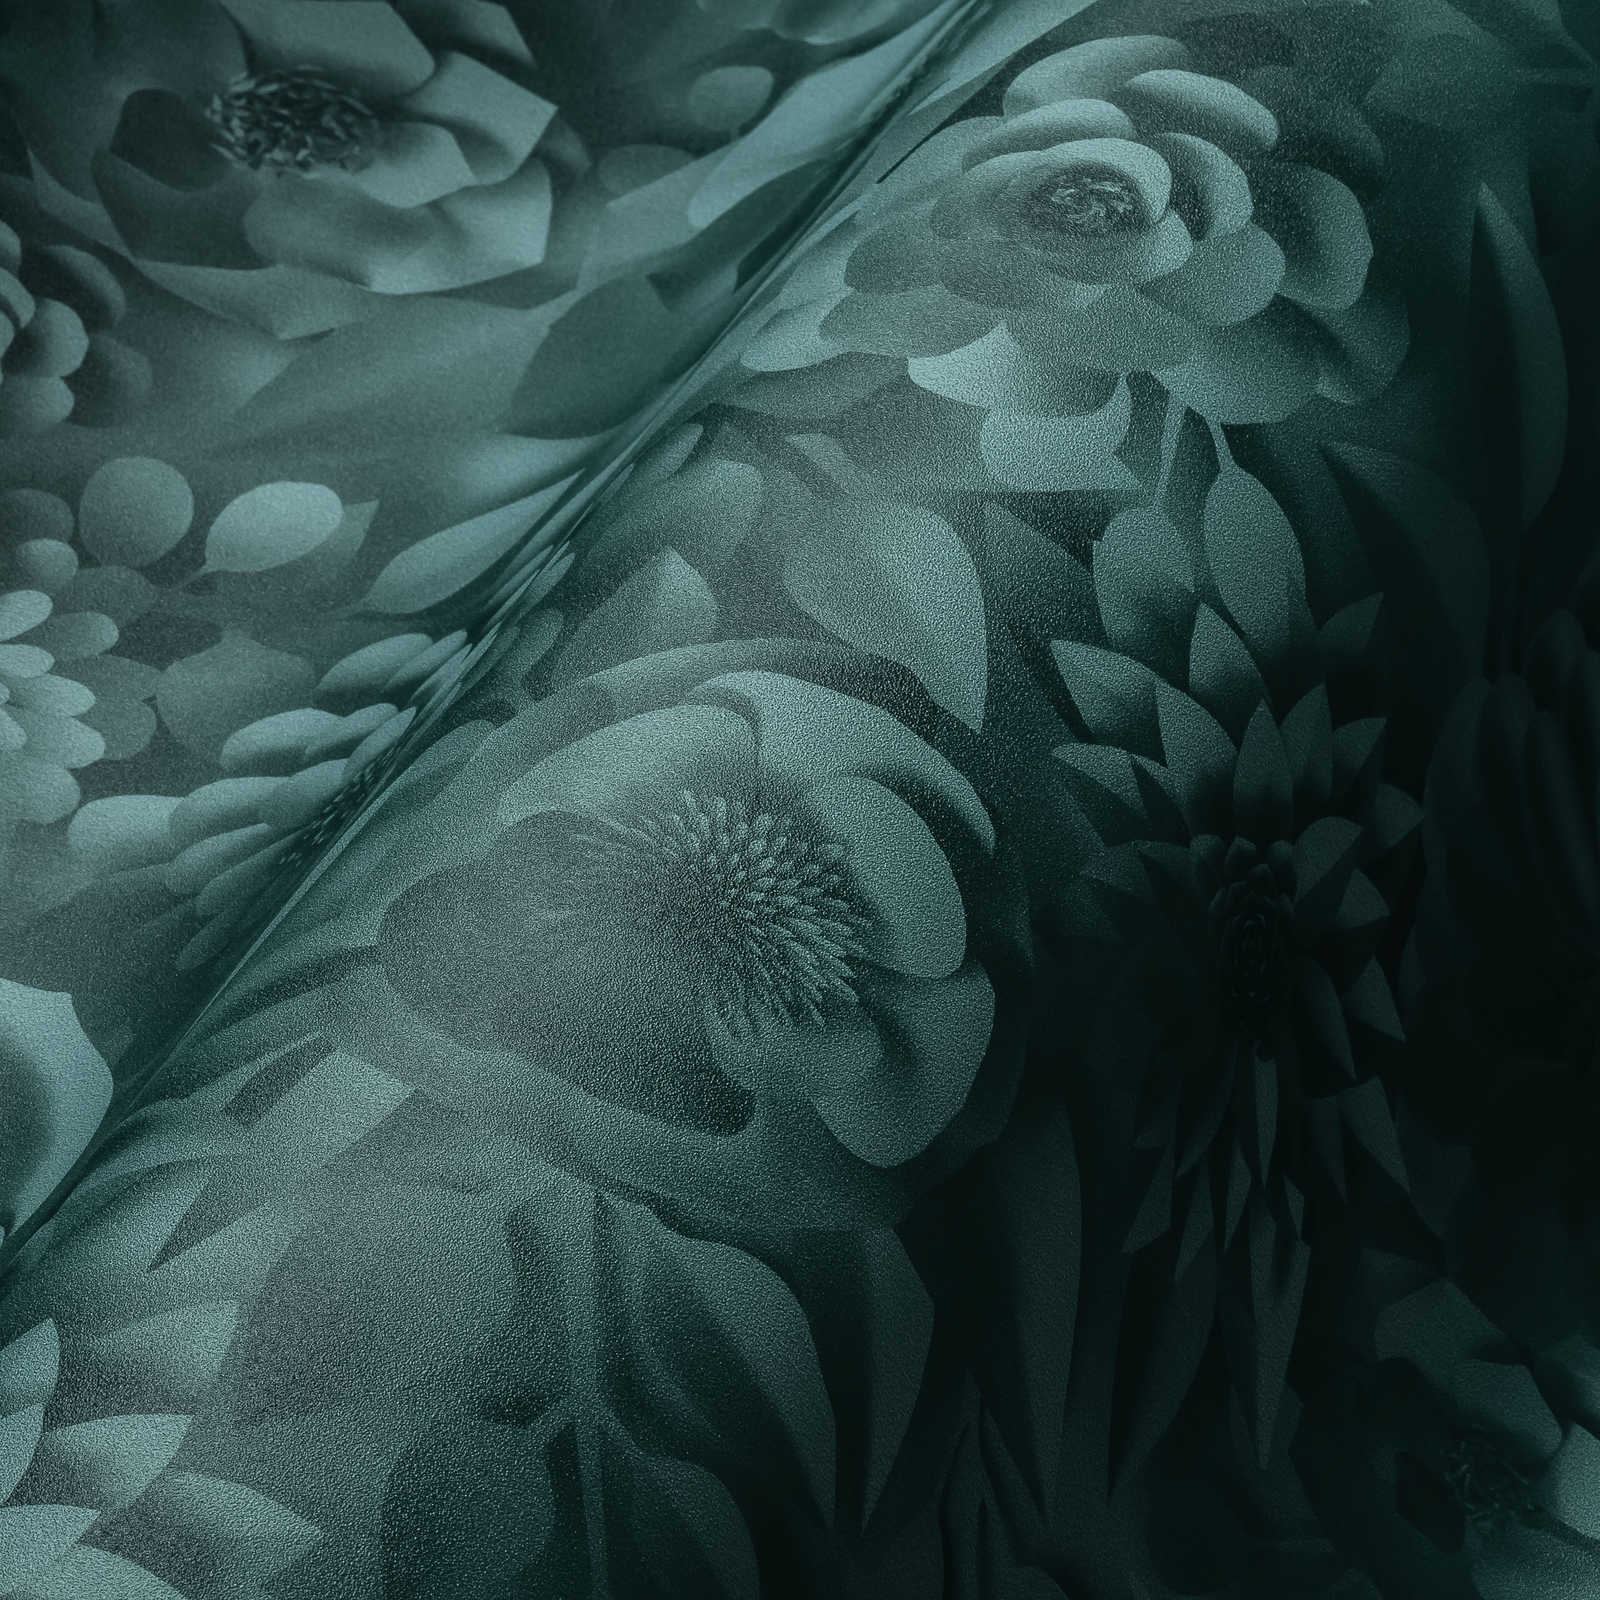             Papier peint 3D avec fleurs en papier, motif graphique de fleurs - vert
        